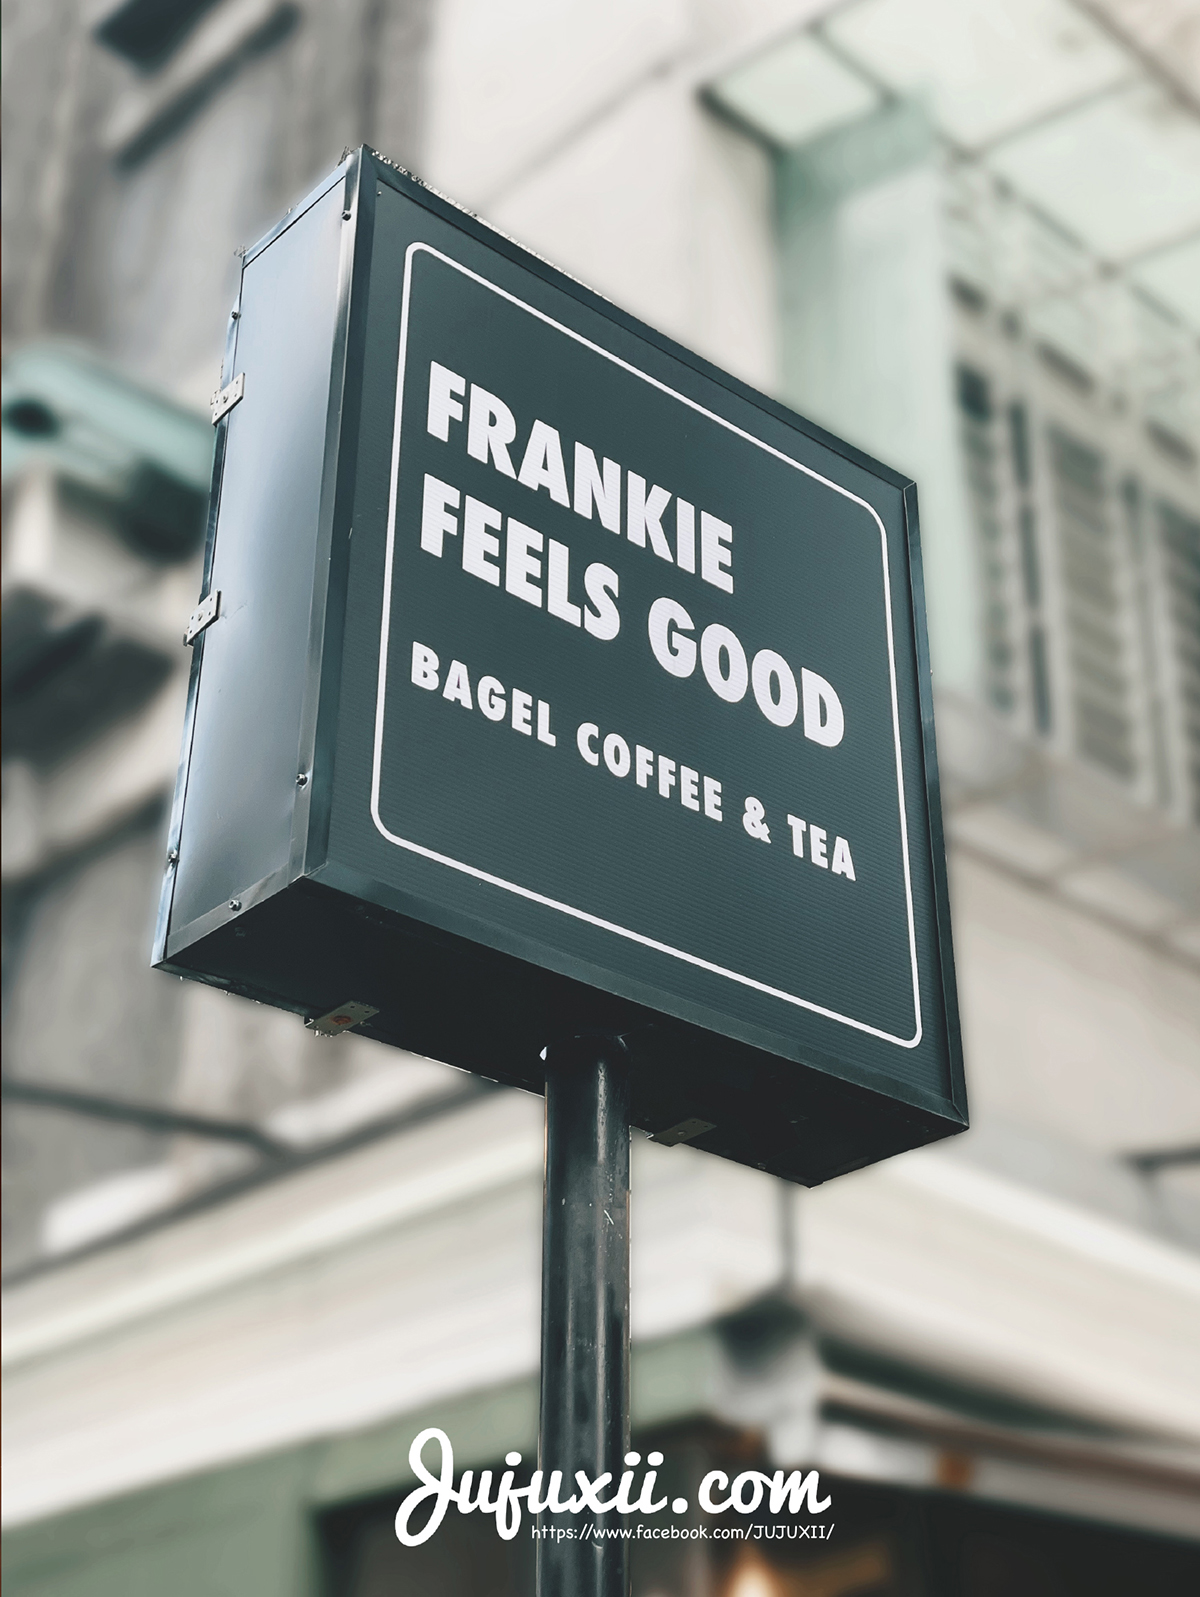 Frankie Fells Good 蒙特婁風貝果 街邊外帶咖啡店